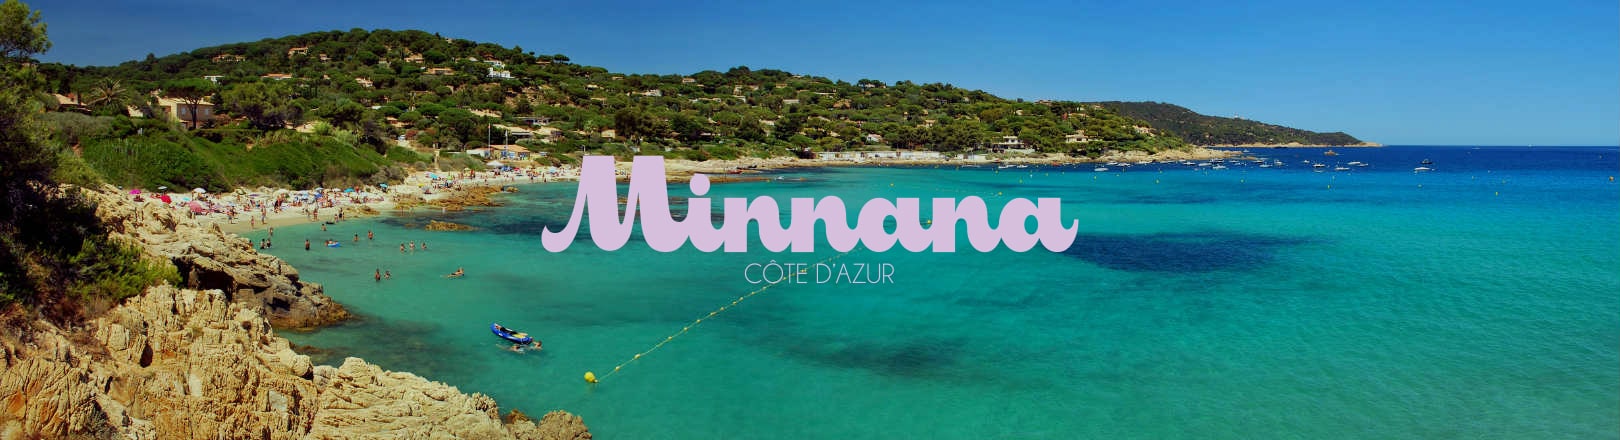 Photo d'une plage dans le sud de la France avec le logo Minnana Côte d'Azur en gros au milieu en couleur lilas